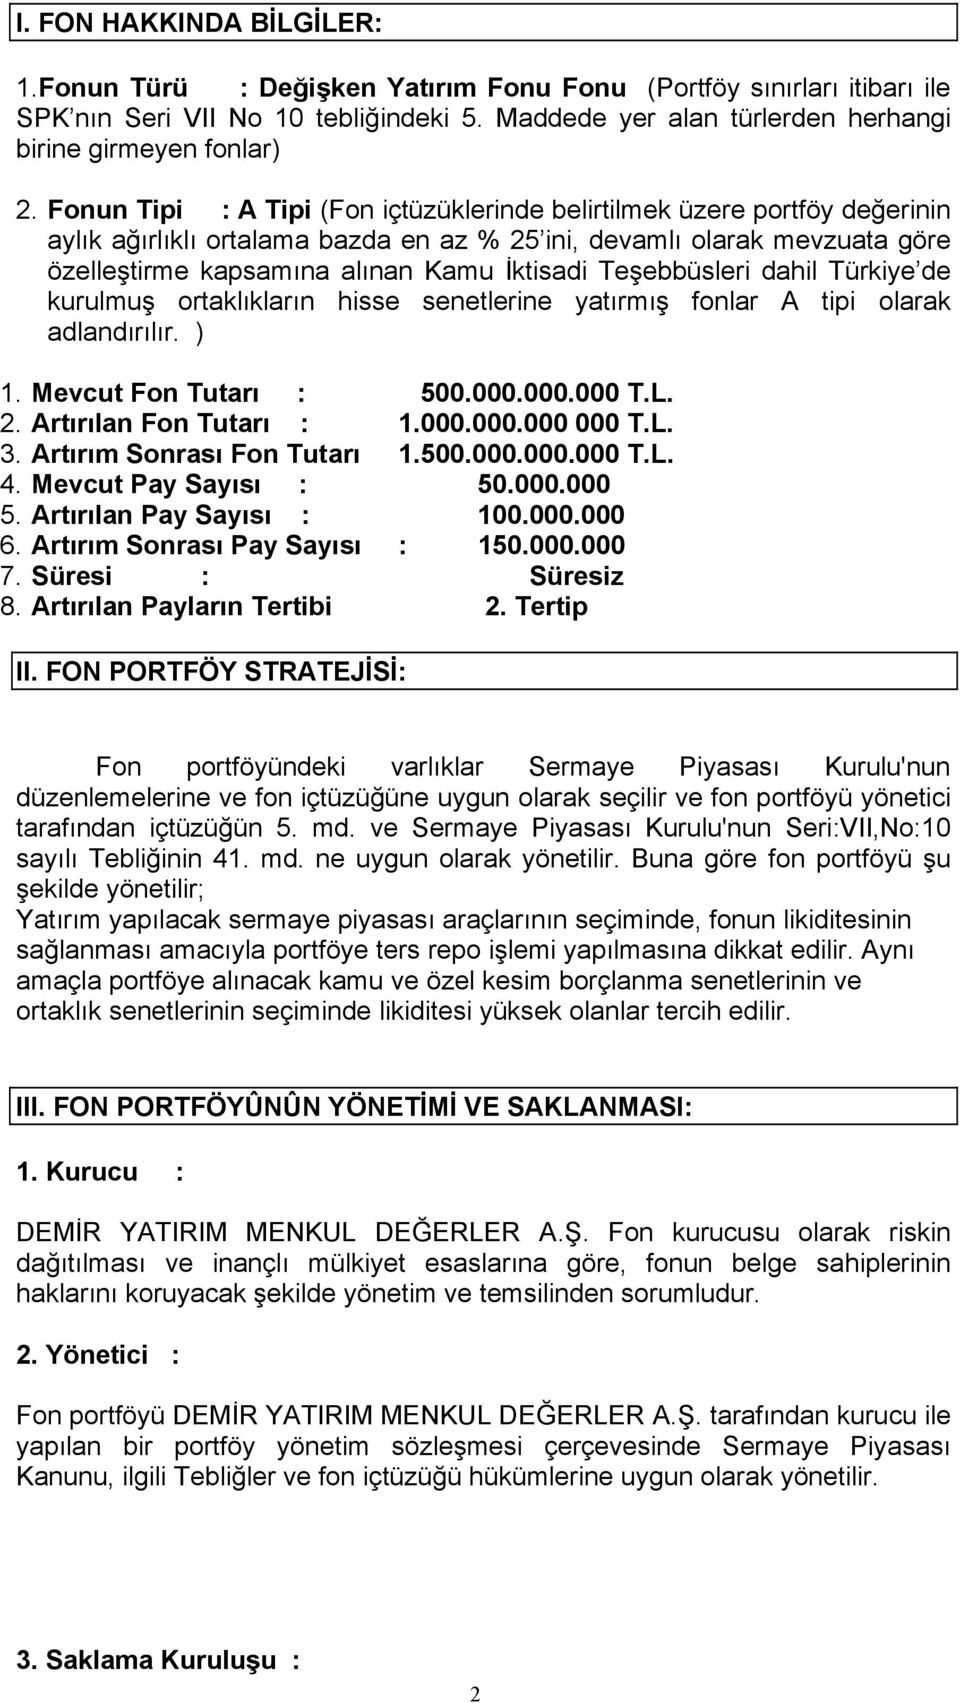 Teşebbüsleri dahil Türkiye de kurulmuş ortaklıkların hisse senetlerine yatırmış fonlar A tipi olarak adlandırılır. ) 1. Mevcut Fon Tutarı : 500.000.000.000 T.L. 2. Artırılan Fon Tutarı : 1.000.000.000 000 T.